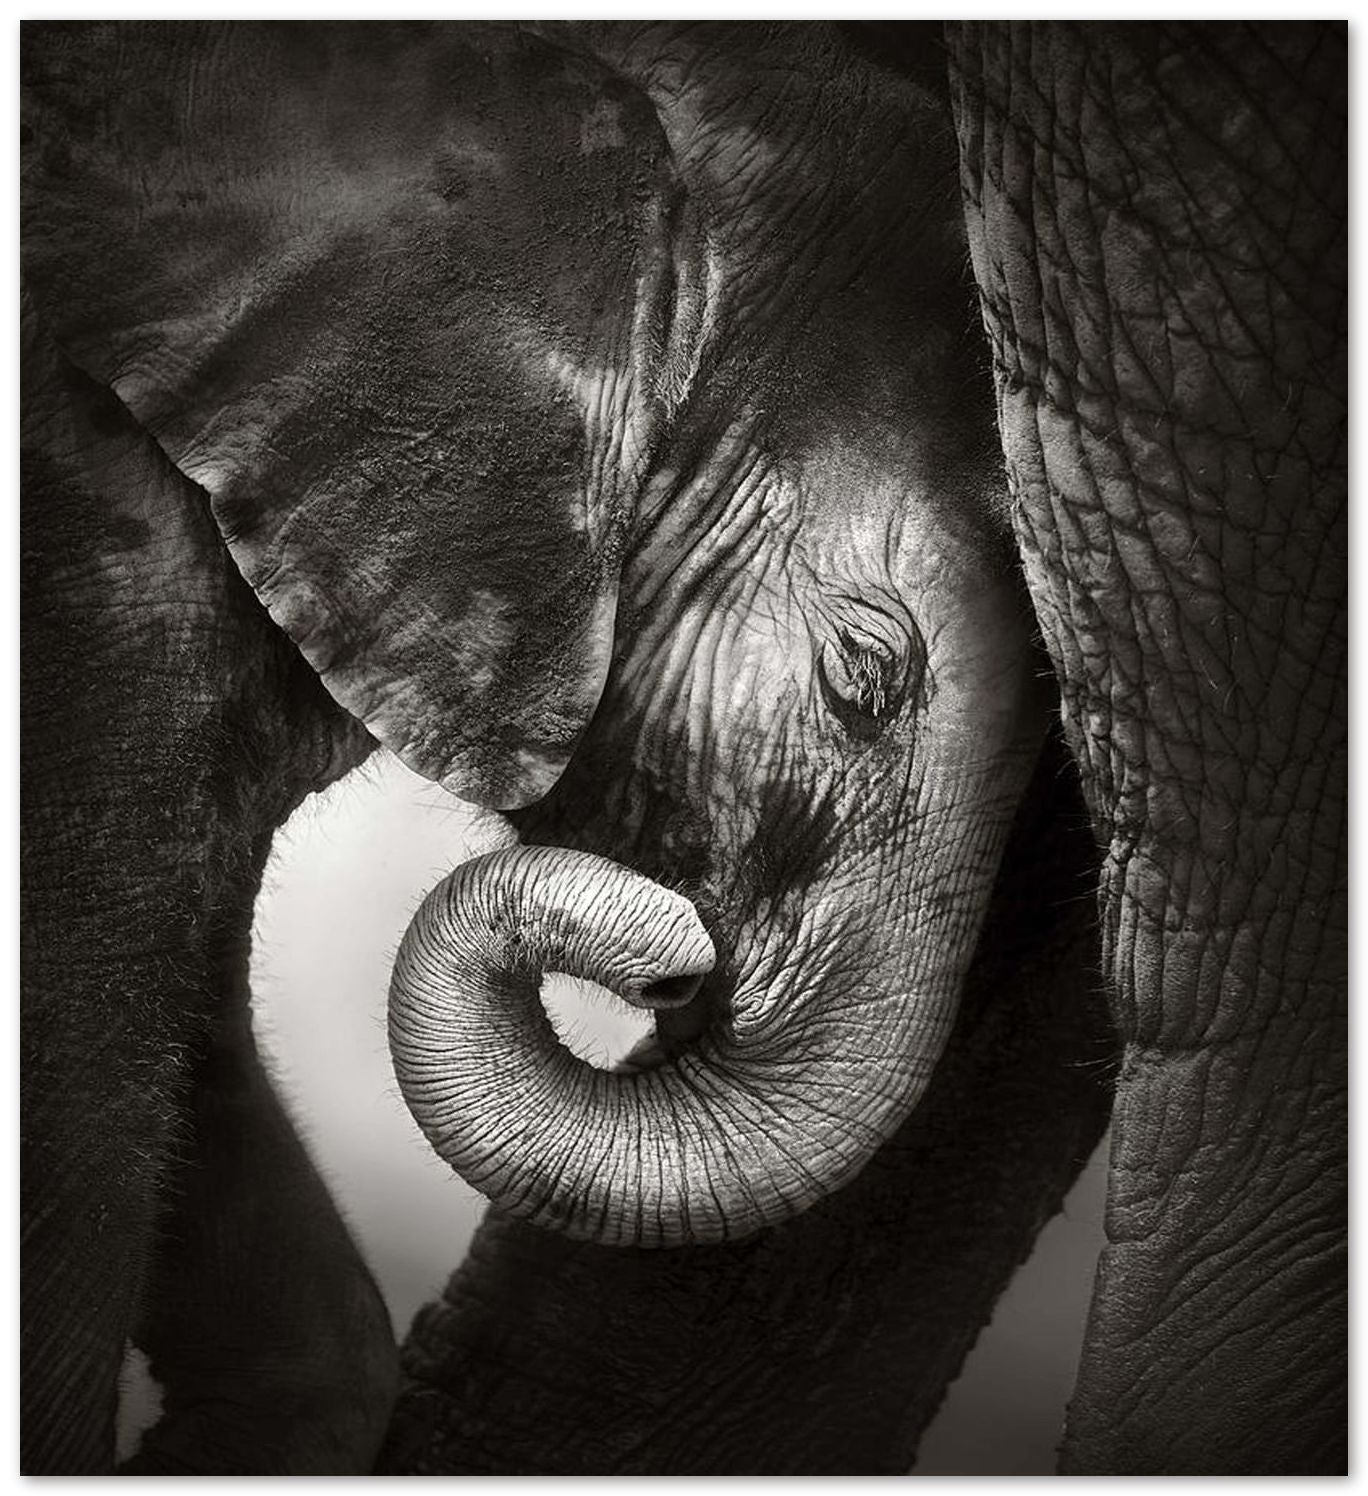 Baby elephant 4 - @chusna